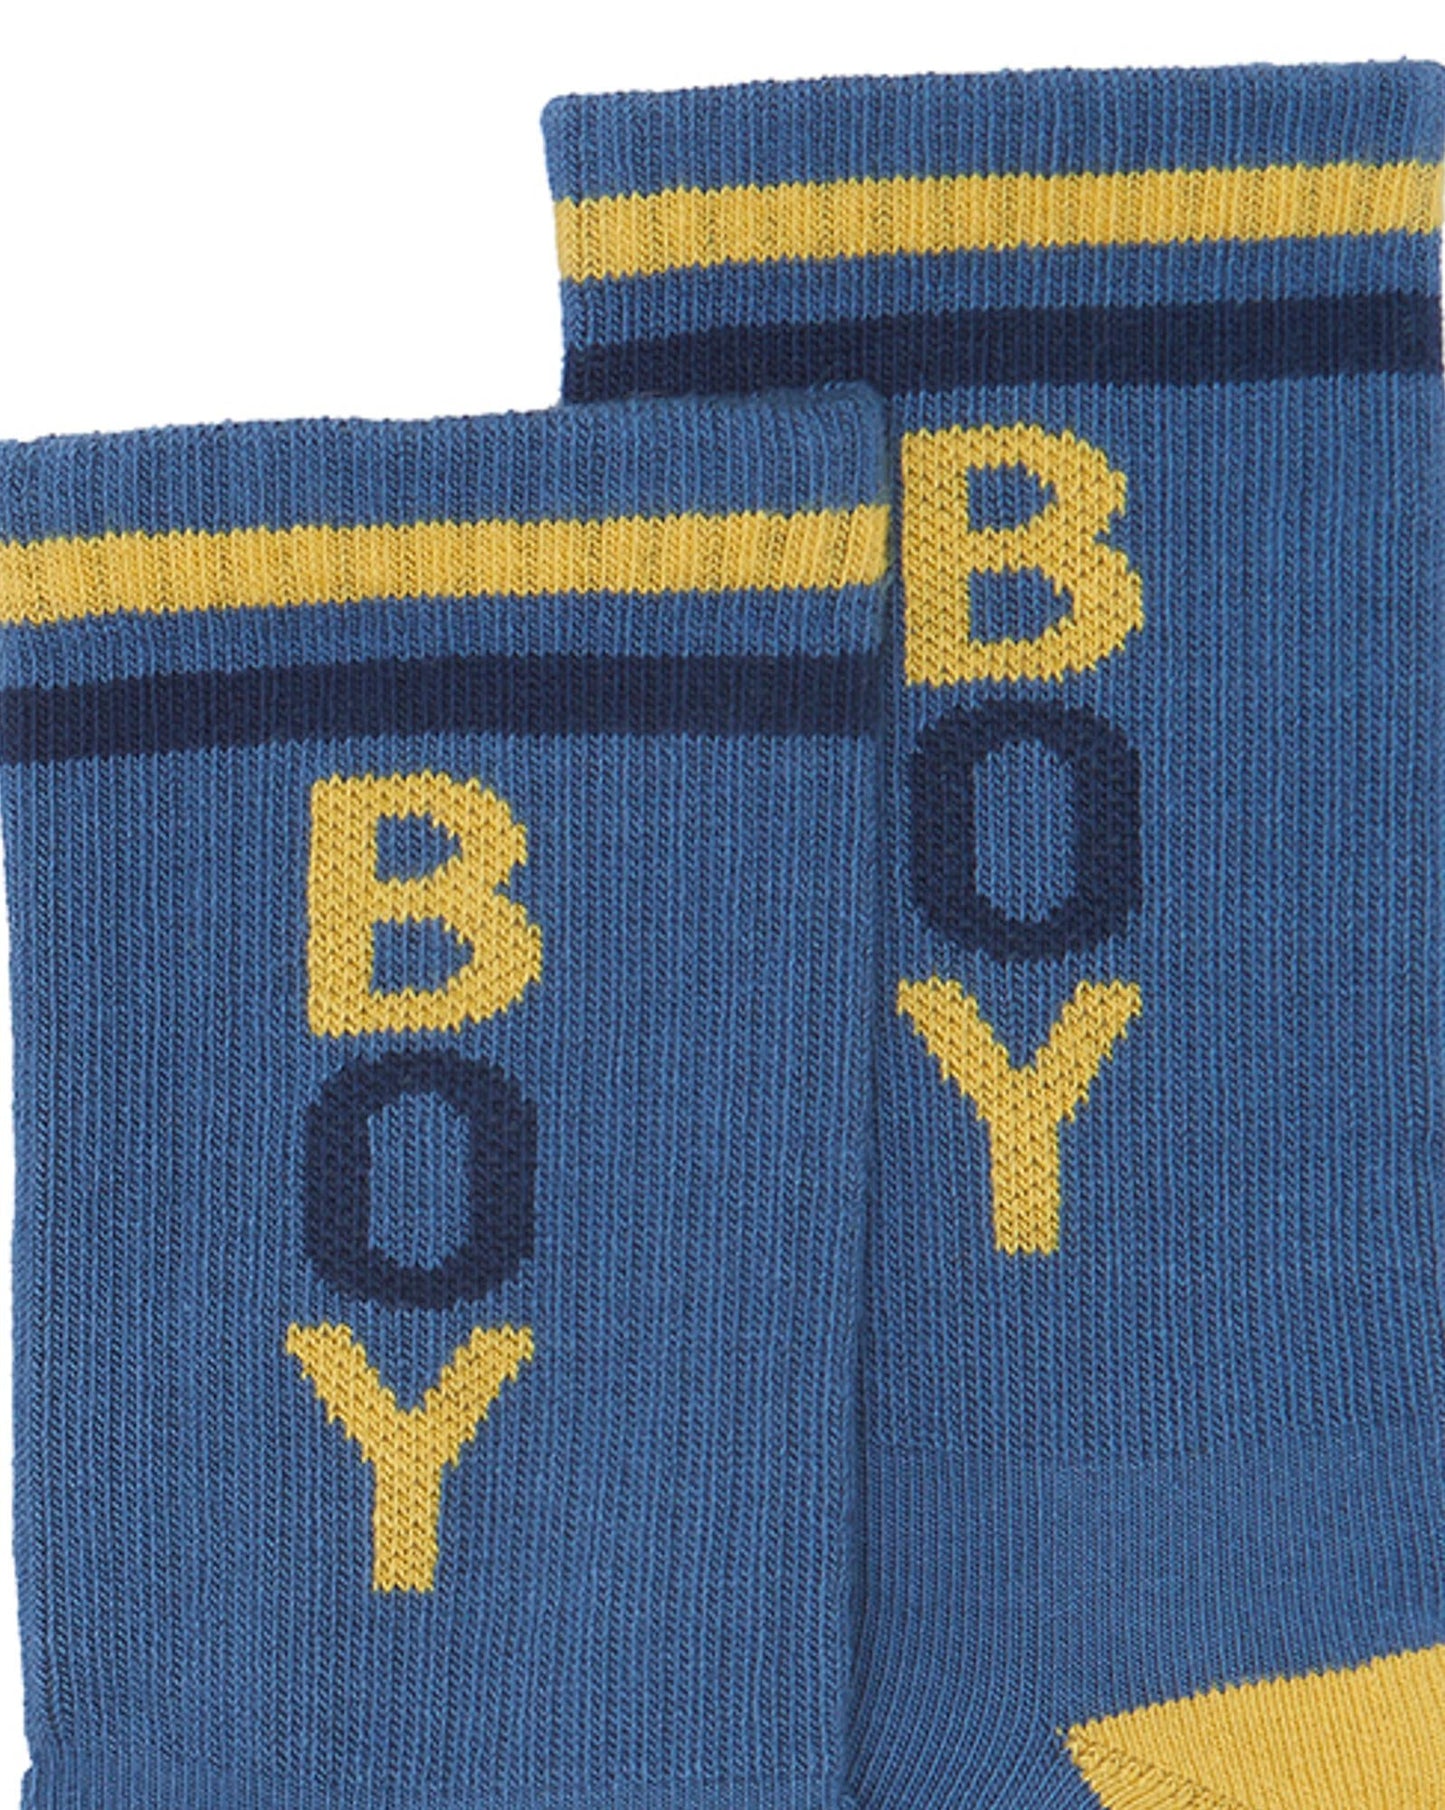 Badboy duo sock Blue Knitwearjacquard